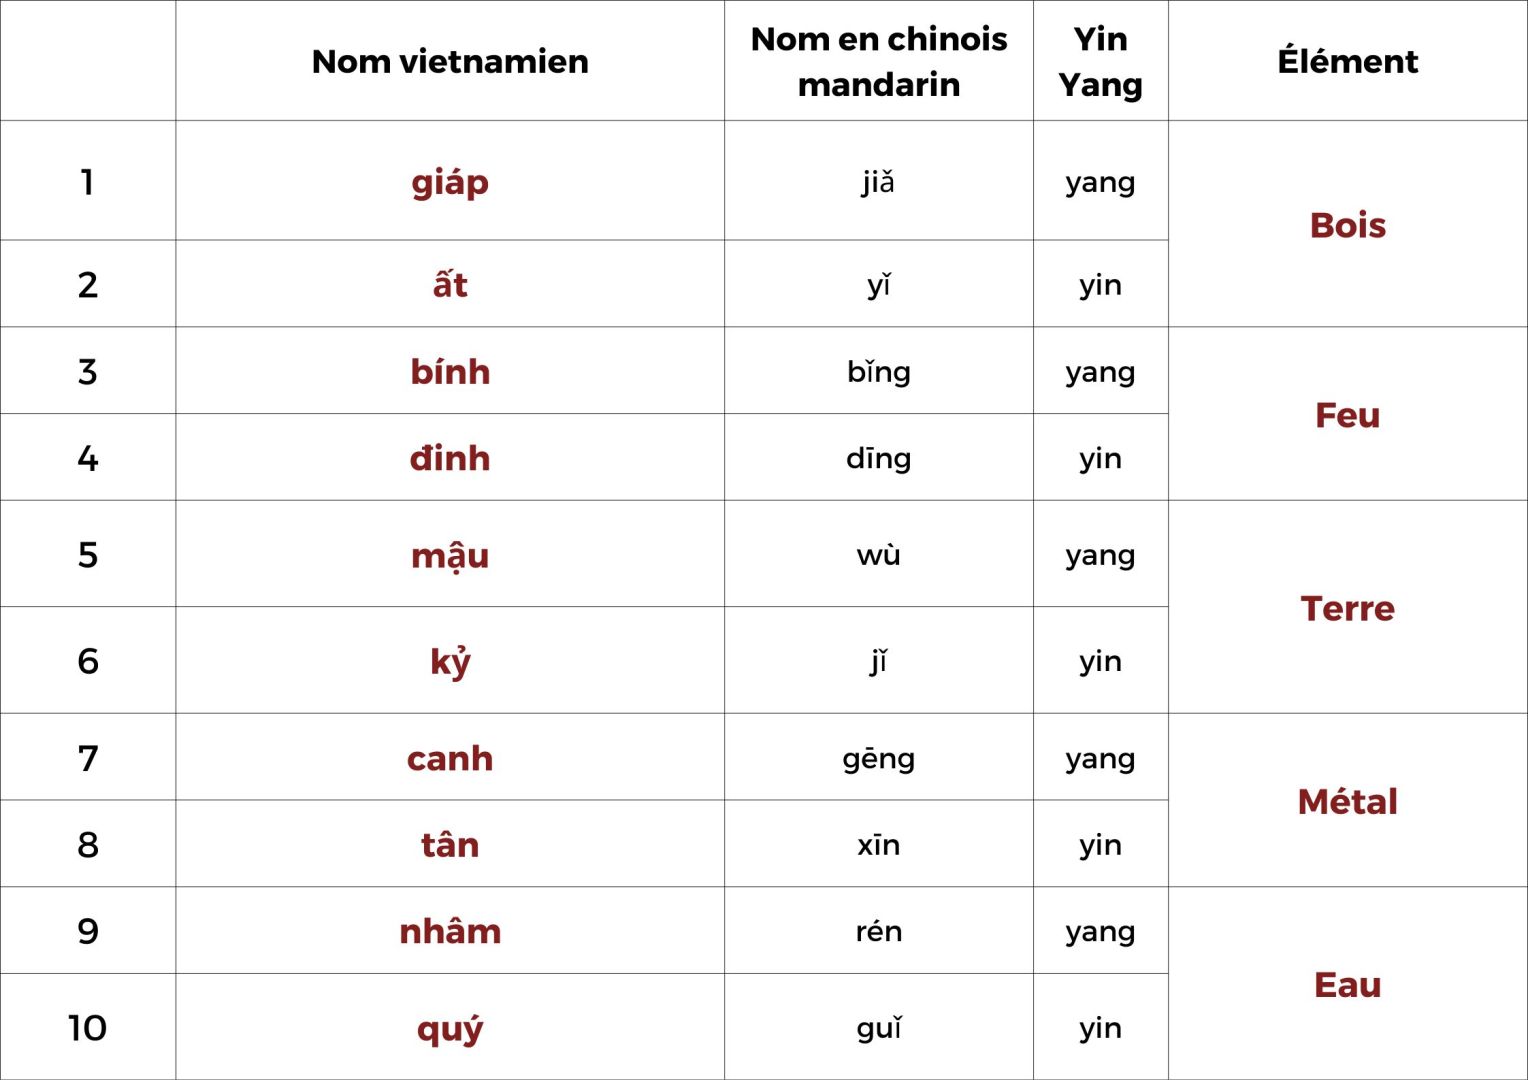 10 Tiges Célestes Vietnamien dans le calendrier lunaire